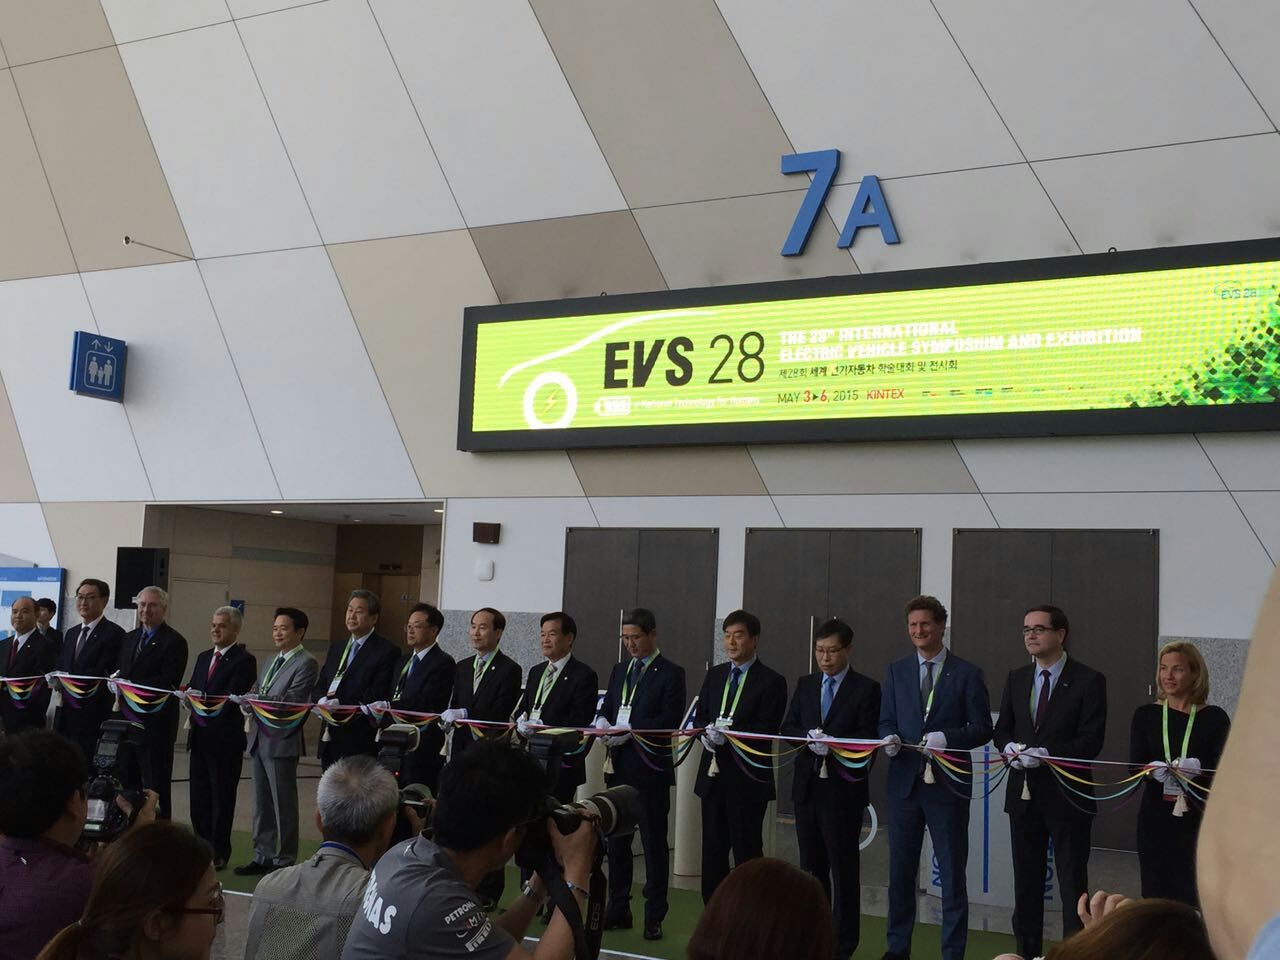 奥美格参加韩国首尔EVS28电动汽车展